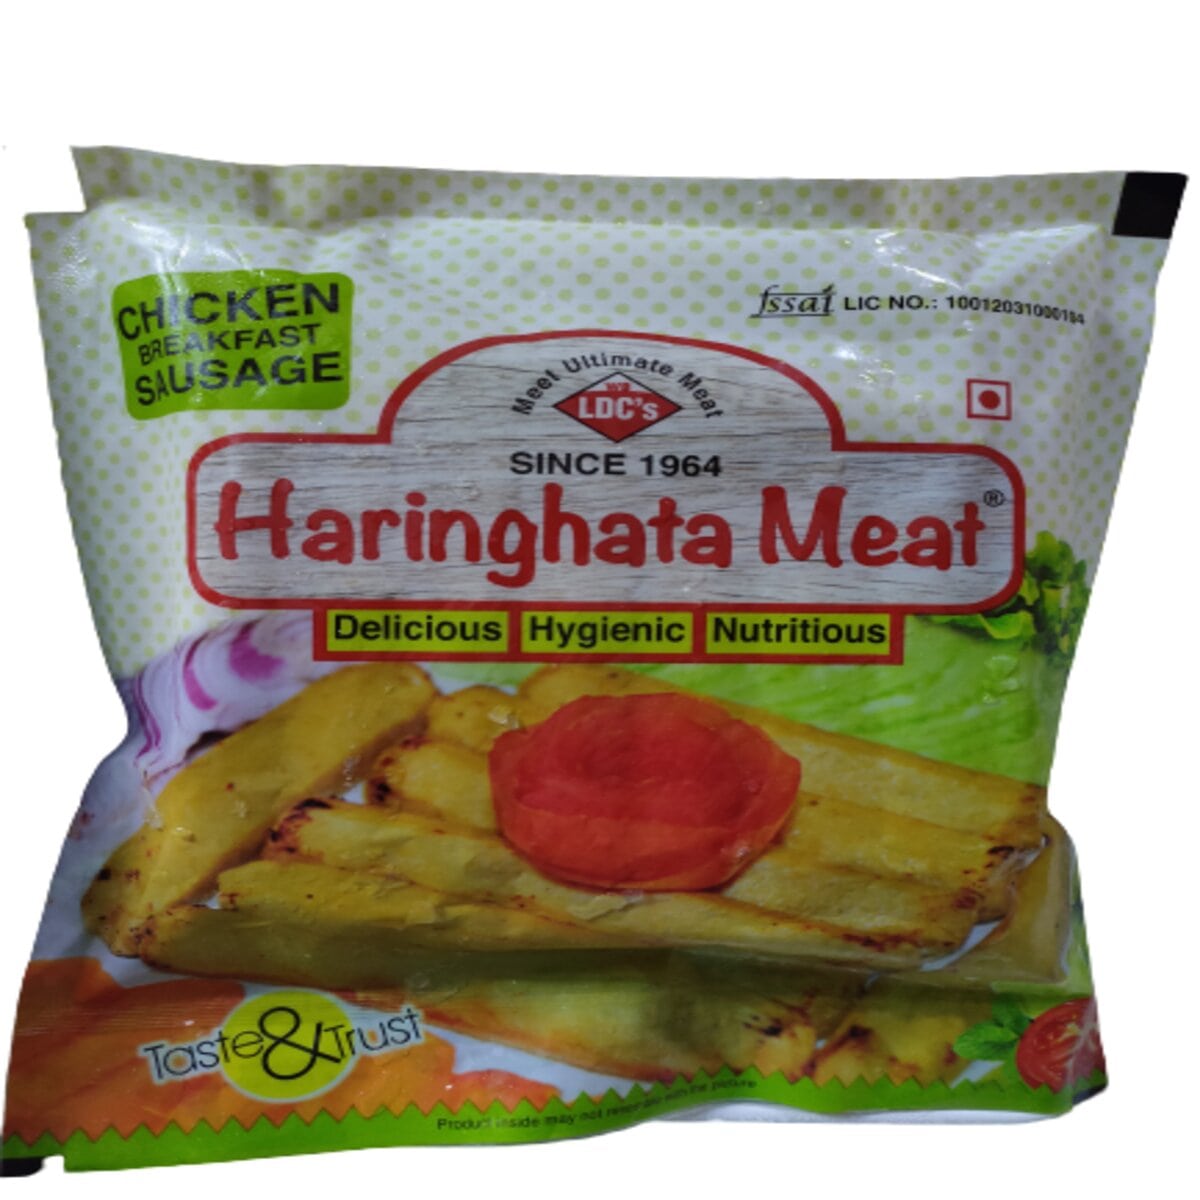 Haringhata Chicken Breakfast Sausage -500gm